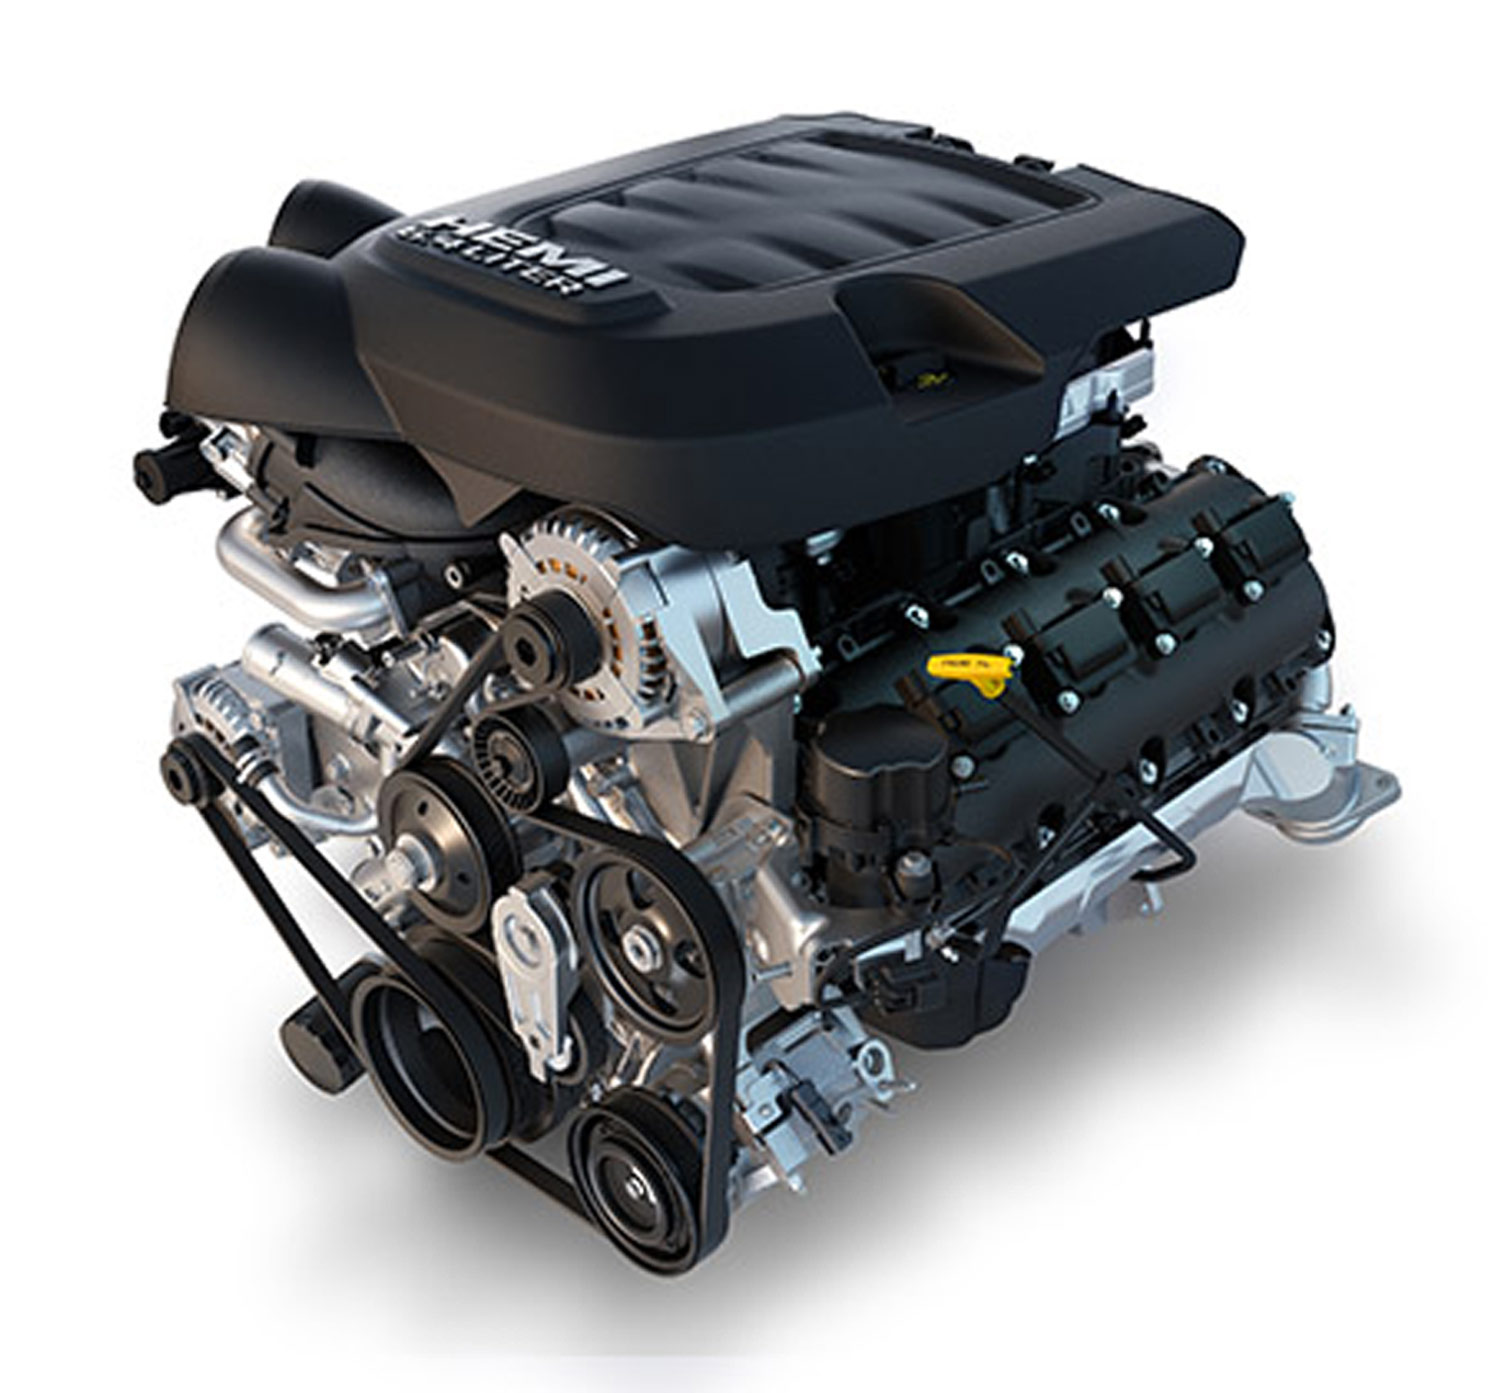 Ram’s 6.4-liter Hemi engine